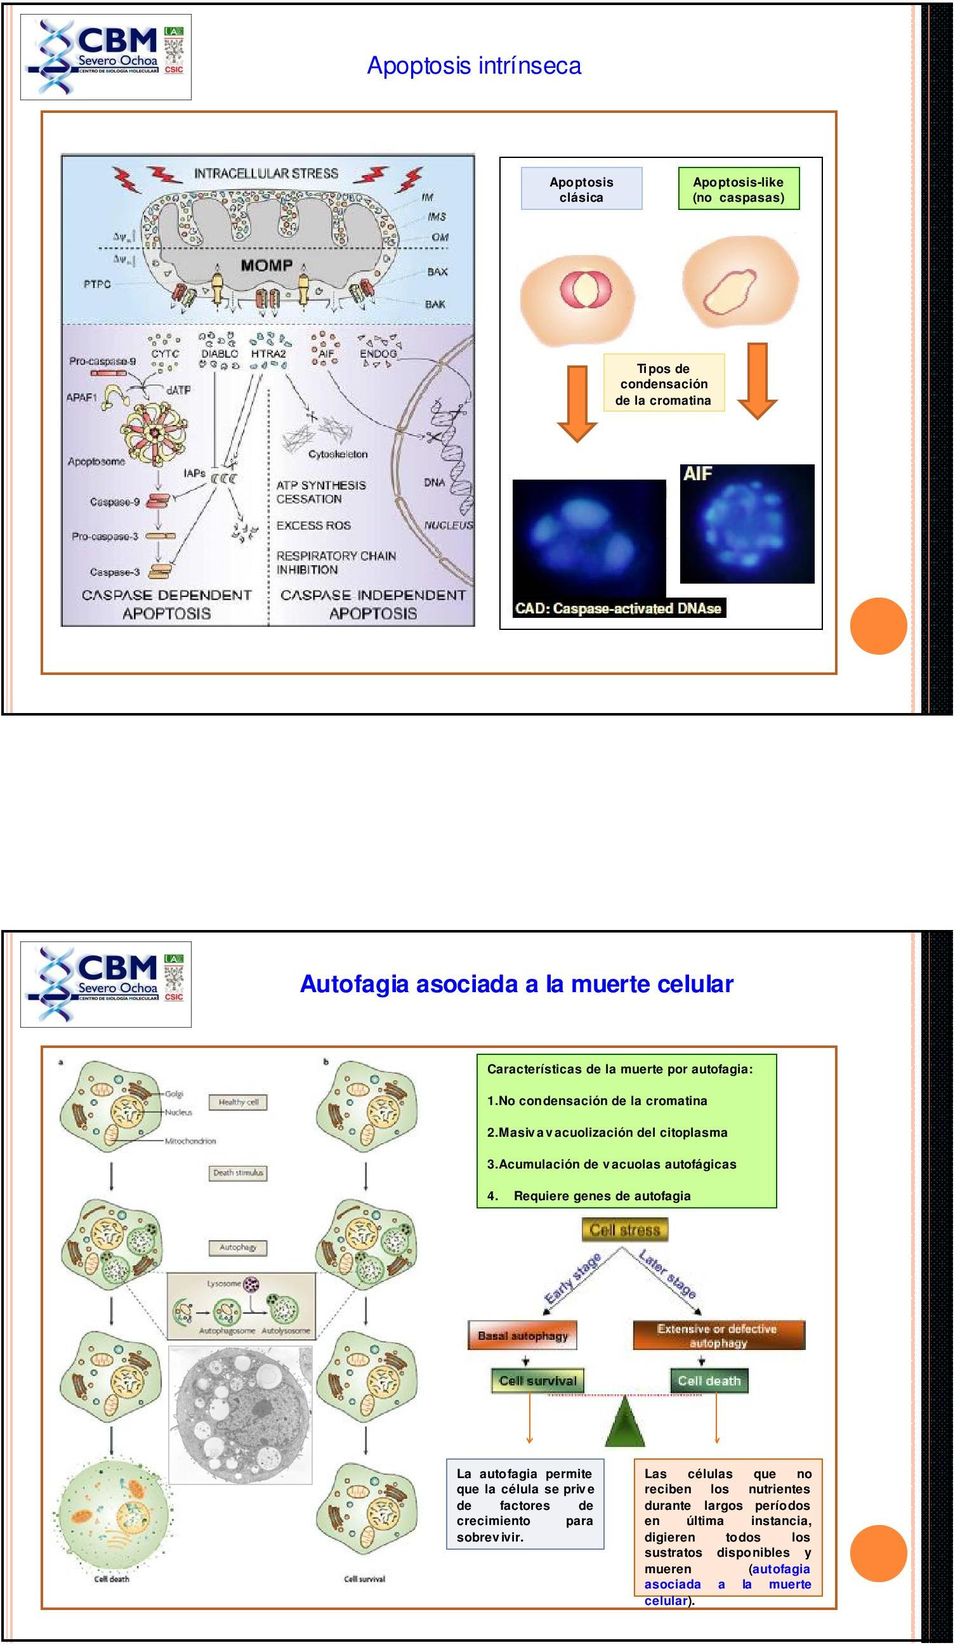 Acumulación de vacuolas autofágicas Autofagia : Proceso en el que las células generan energía y metabolitos por digestión de sus propios orgánulos y macromoléculas. 4.